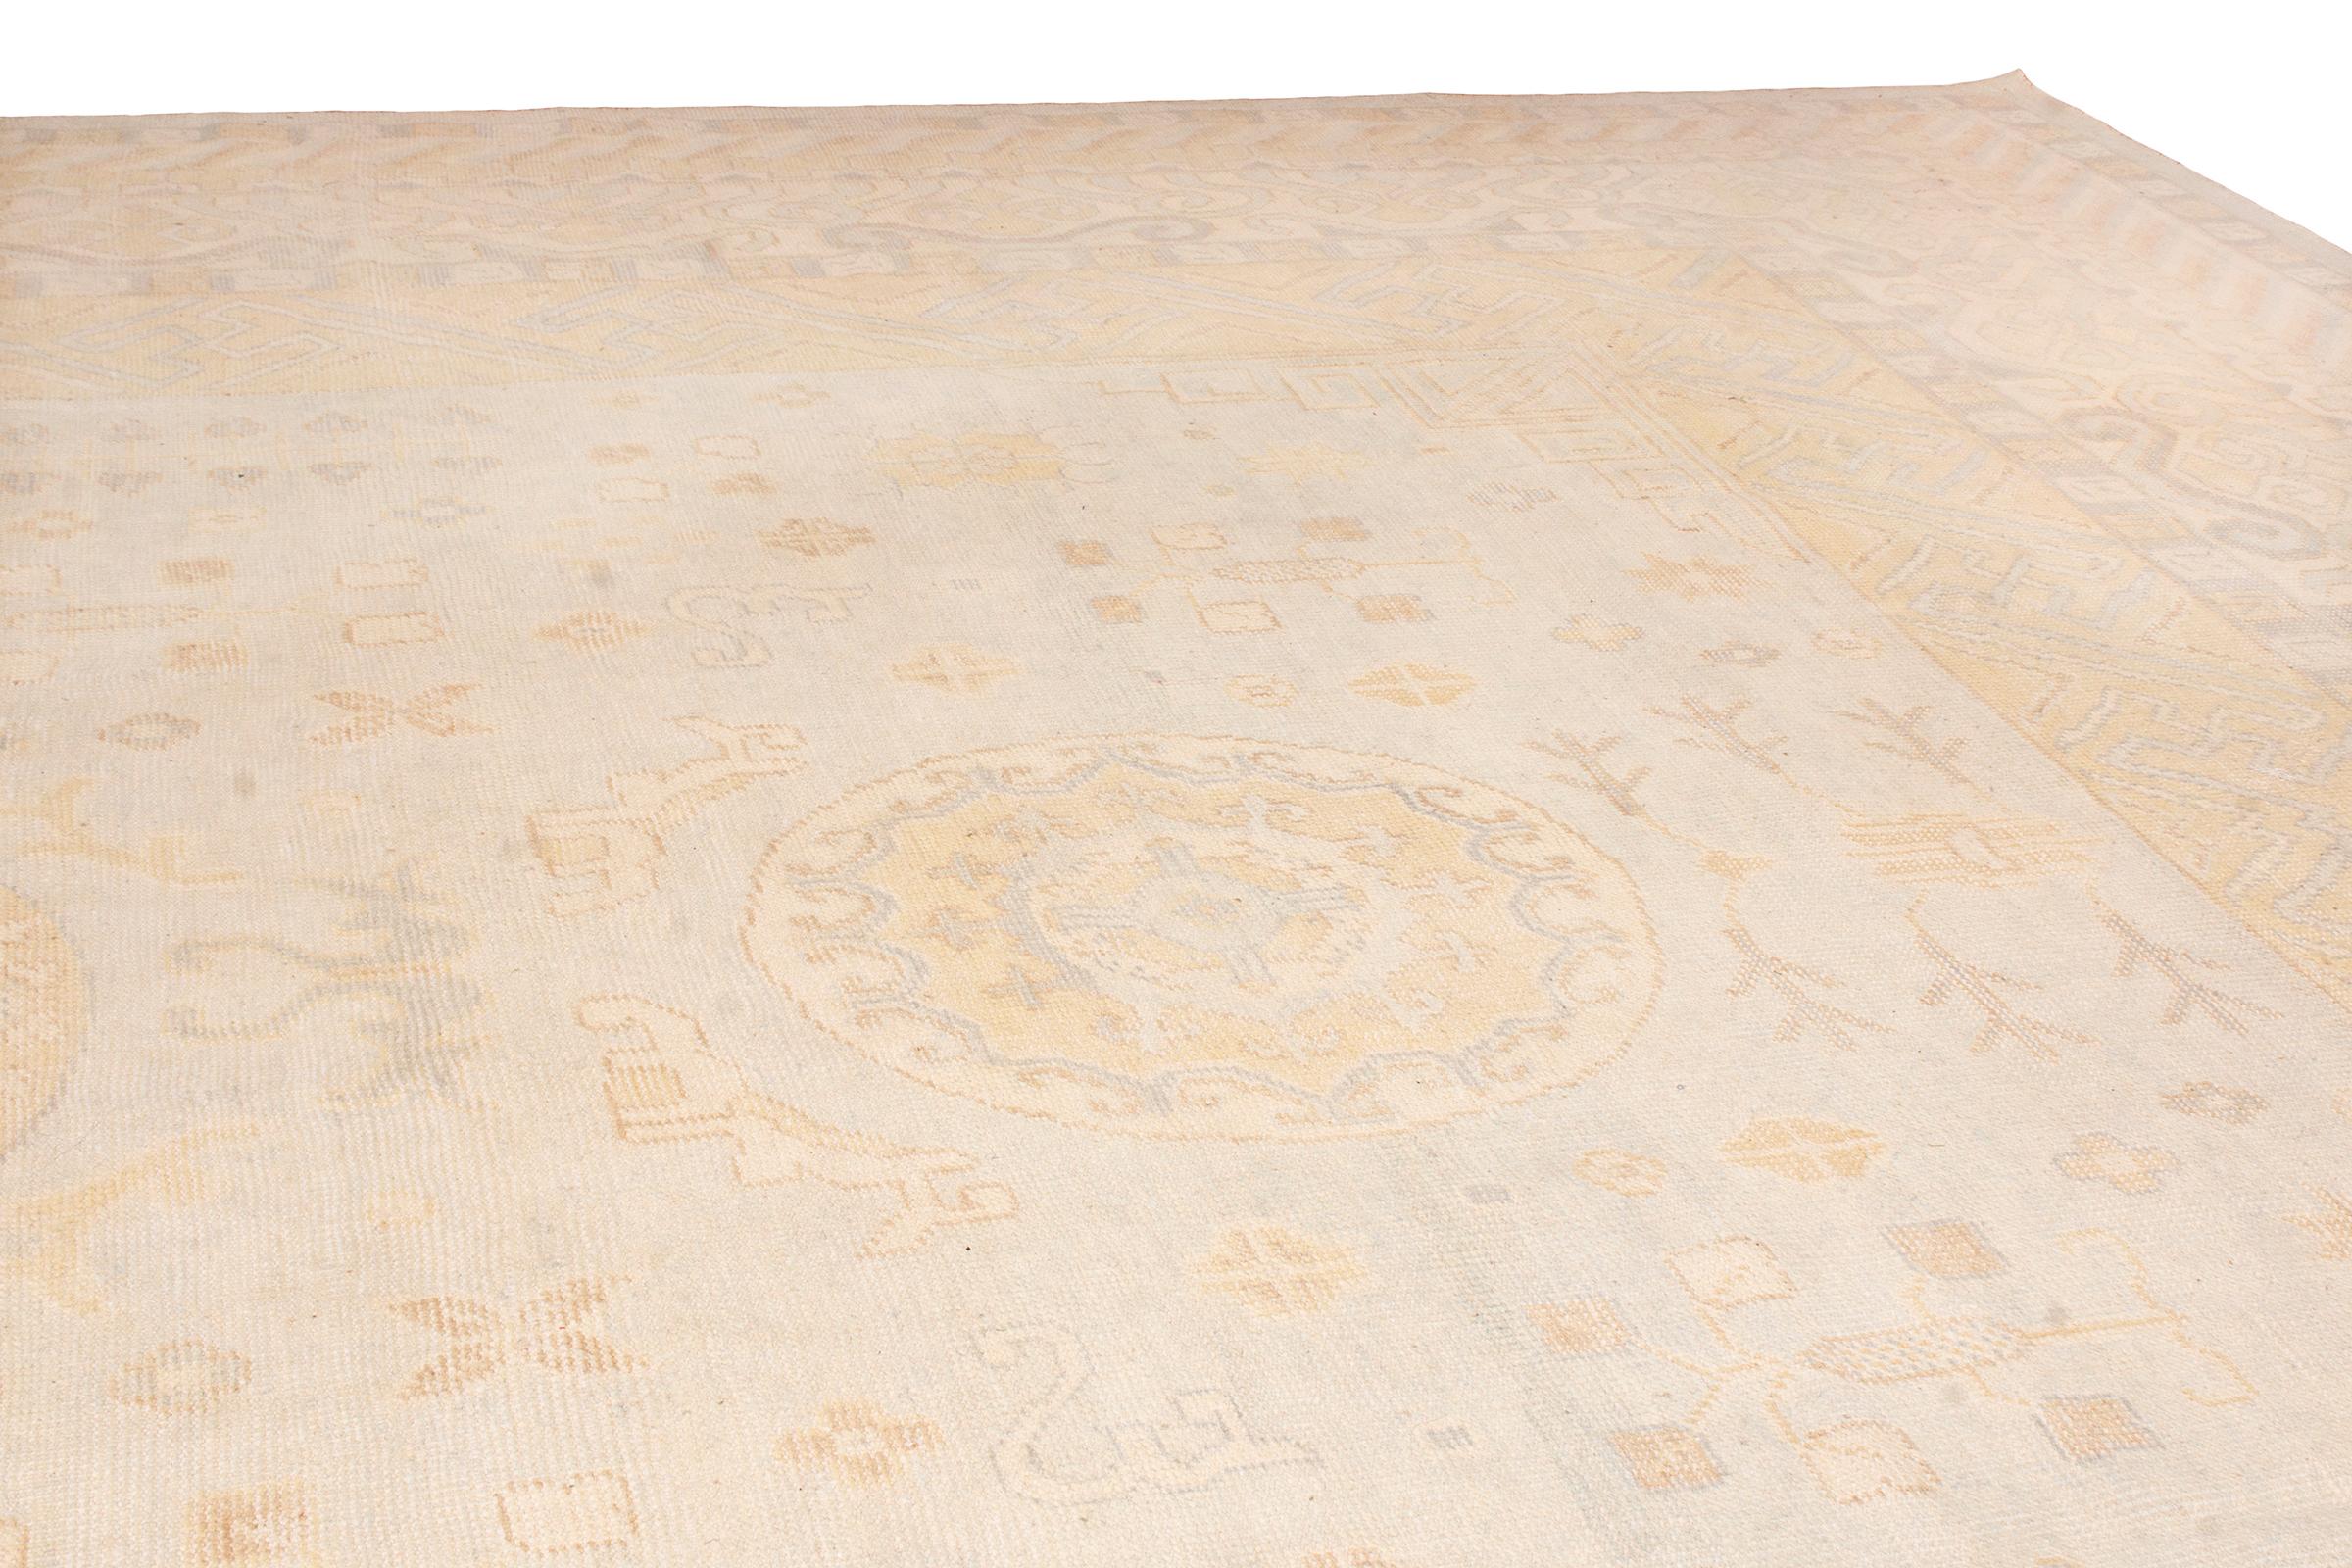 De la collection Modern Classics de Rug & Kilim, un stupéfiant tapis 16x27 de la taille d'un palais, inspiré des tapis anciens de Khotan du plus haut calibre. 

Plus de détails sur le design : Noué à la main dans un jeu durable de laine et de